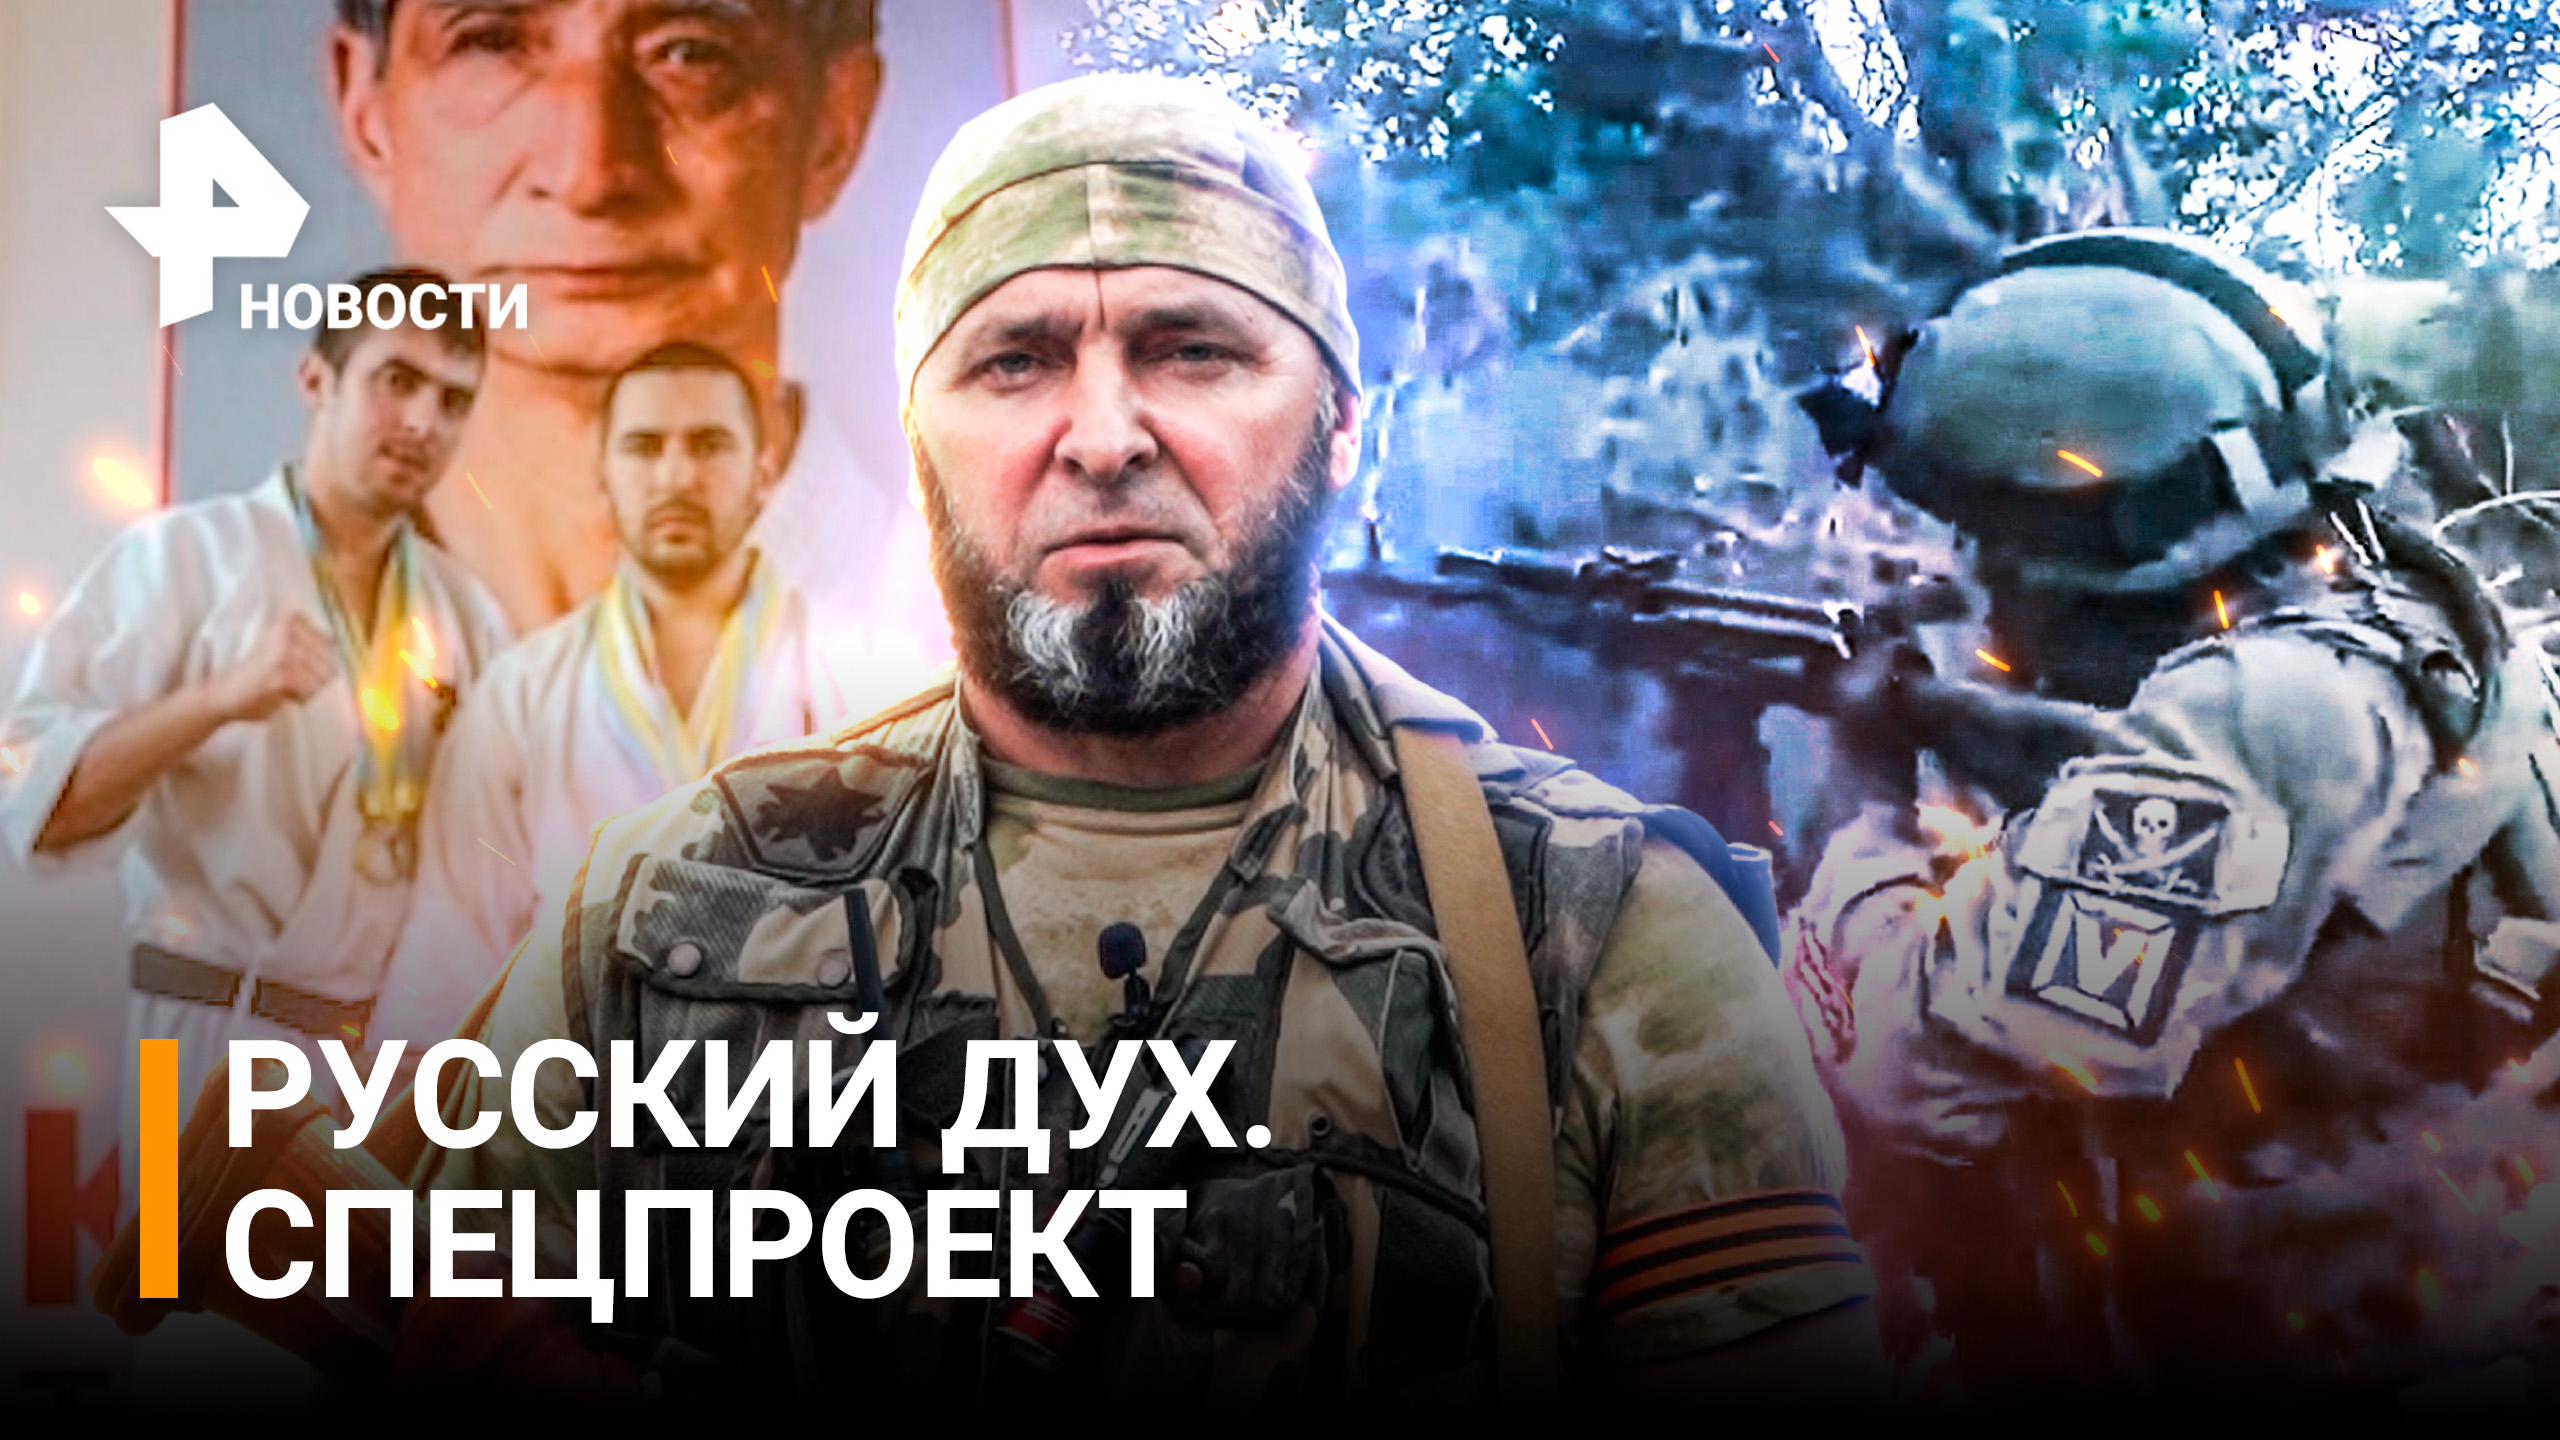 РУССКИЙ ДУХ: кто встал на защиту Донбасса? Спецпроект РЕН ТВ